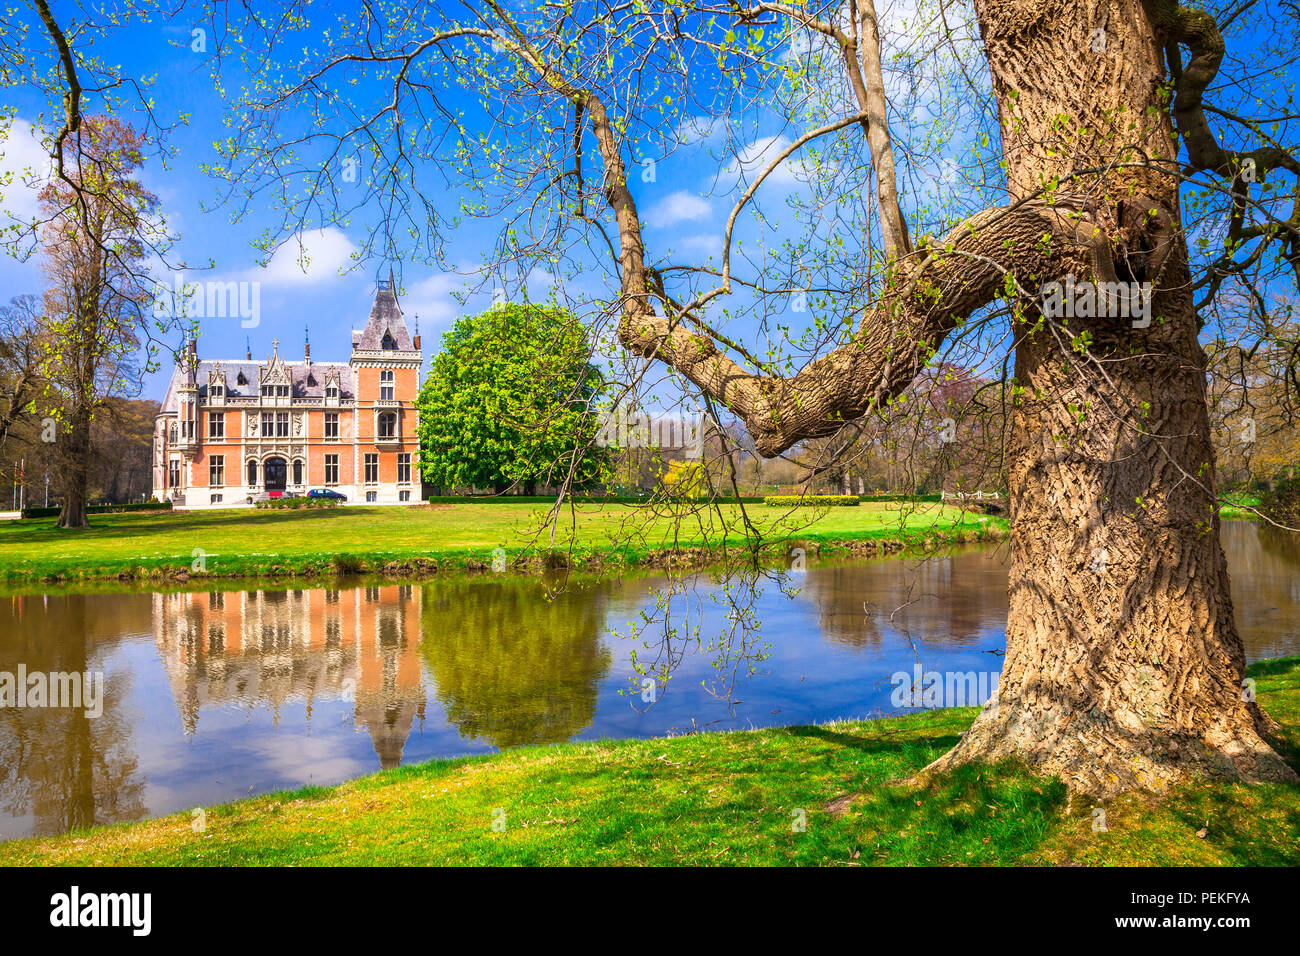 Beau château d'Aertrycke,vue panoramique,Belgique. Banque D'Images